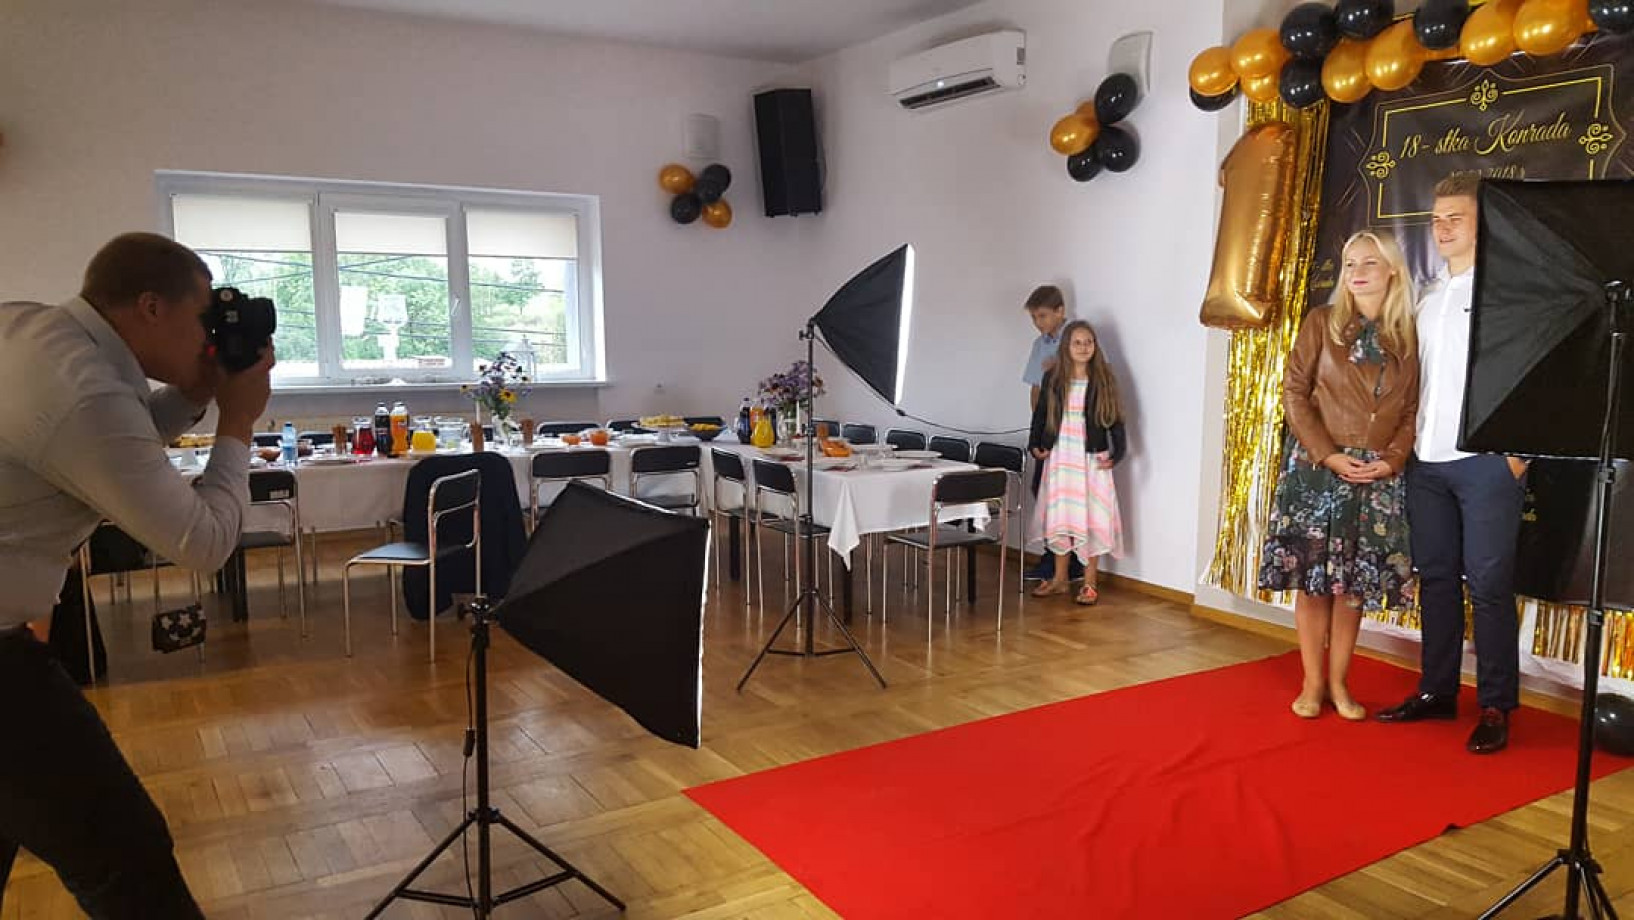 zdjęcia wroclaw fotograf jakub-lisiecki portfolio zdjecia okolicznosciowe imprezy